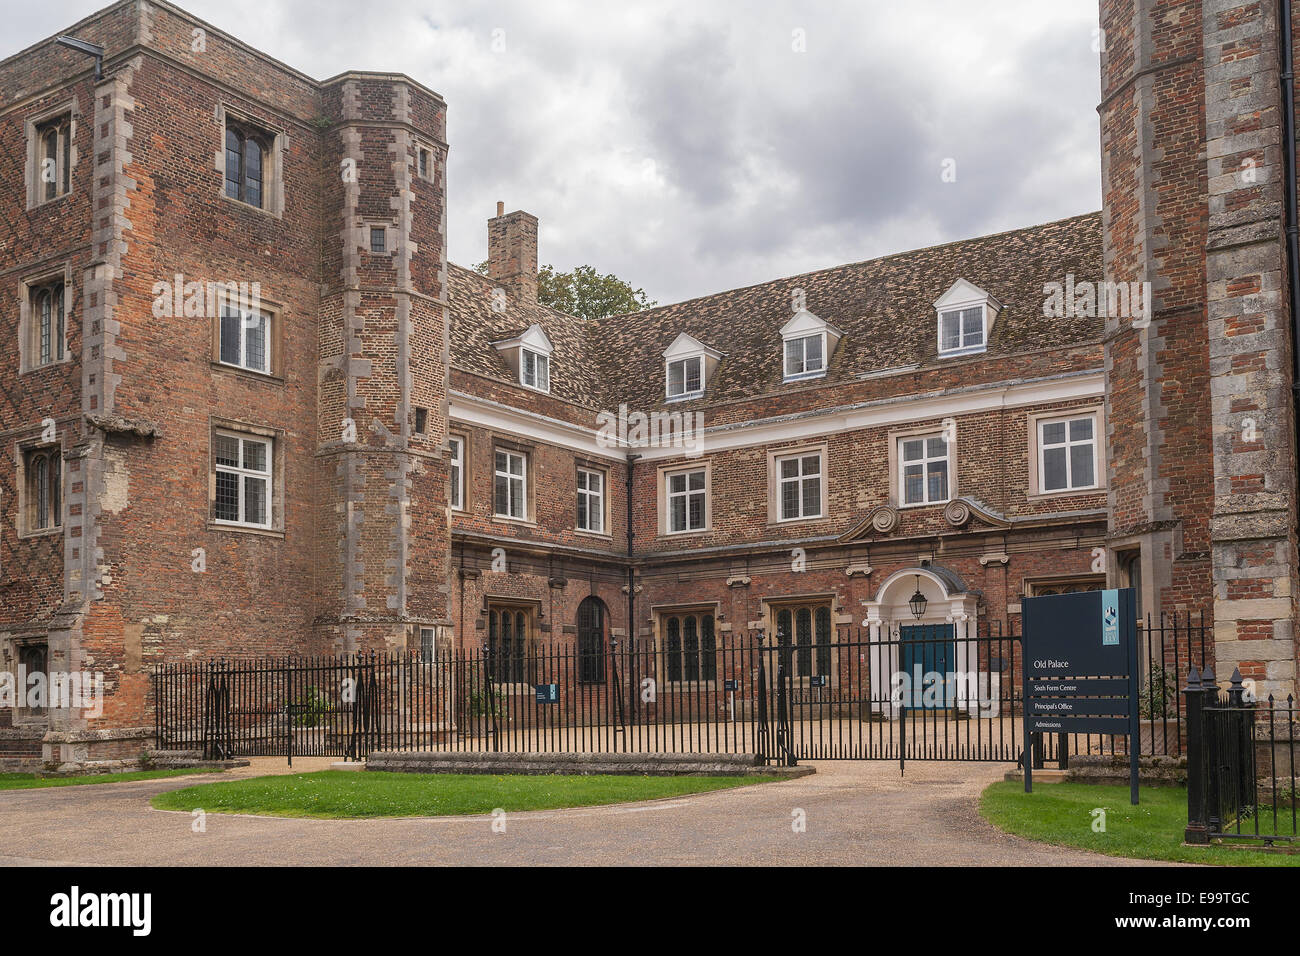 England, Cambridgeshire, Ely, Old Palace Stock Photo